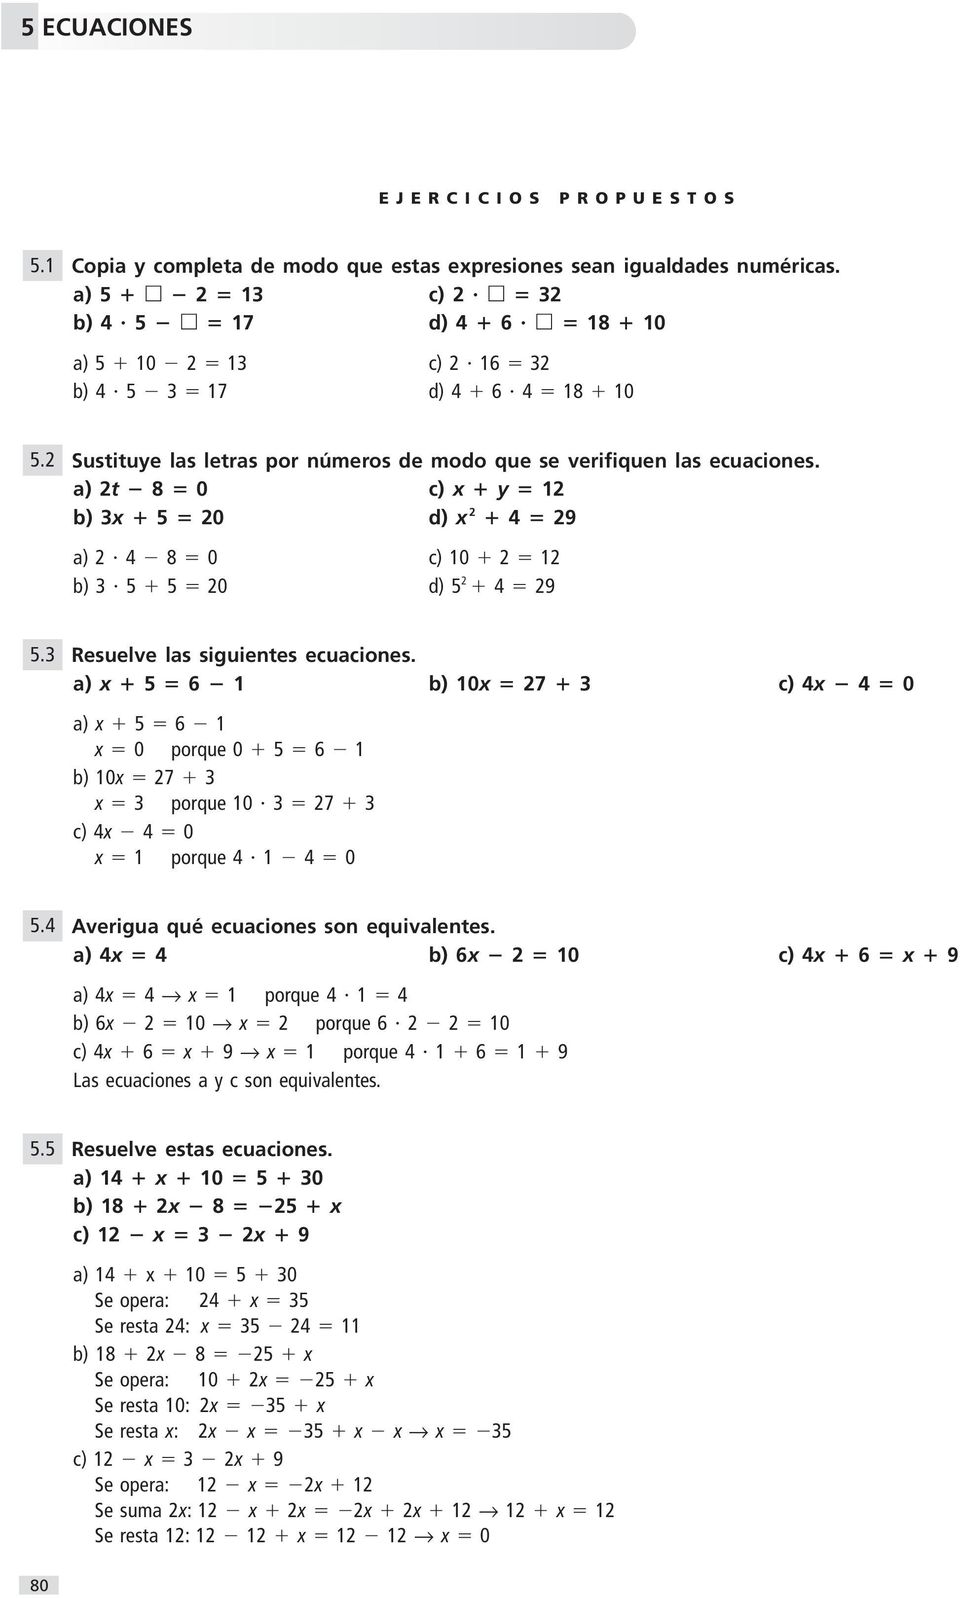 a) 5 6 1 b) 10 7 c) 0 a) 5 6 1 0 porque 0 5 6 1 b) 10 7 porque 10 7 c) 0 1 porque 1 0 5. Averigua qué ecuaciones son equivalentes.